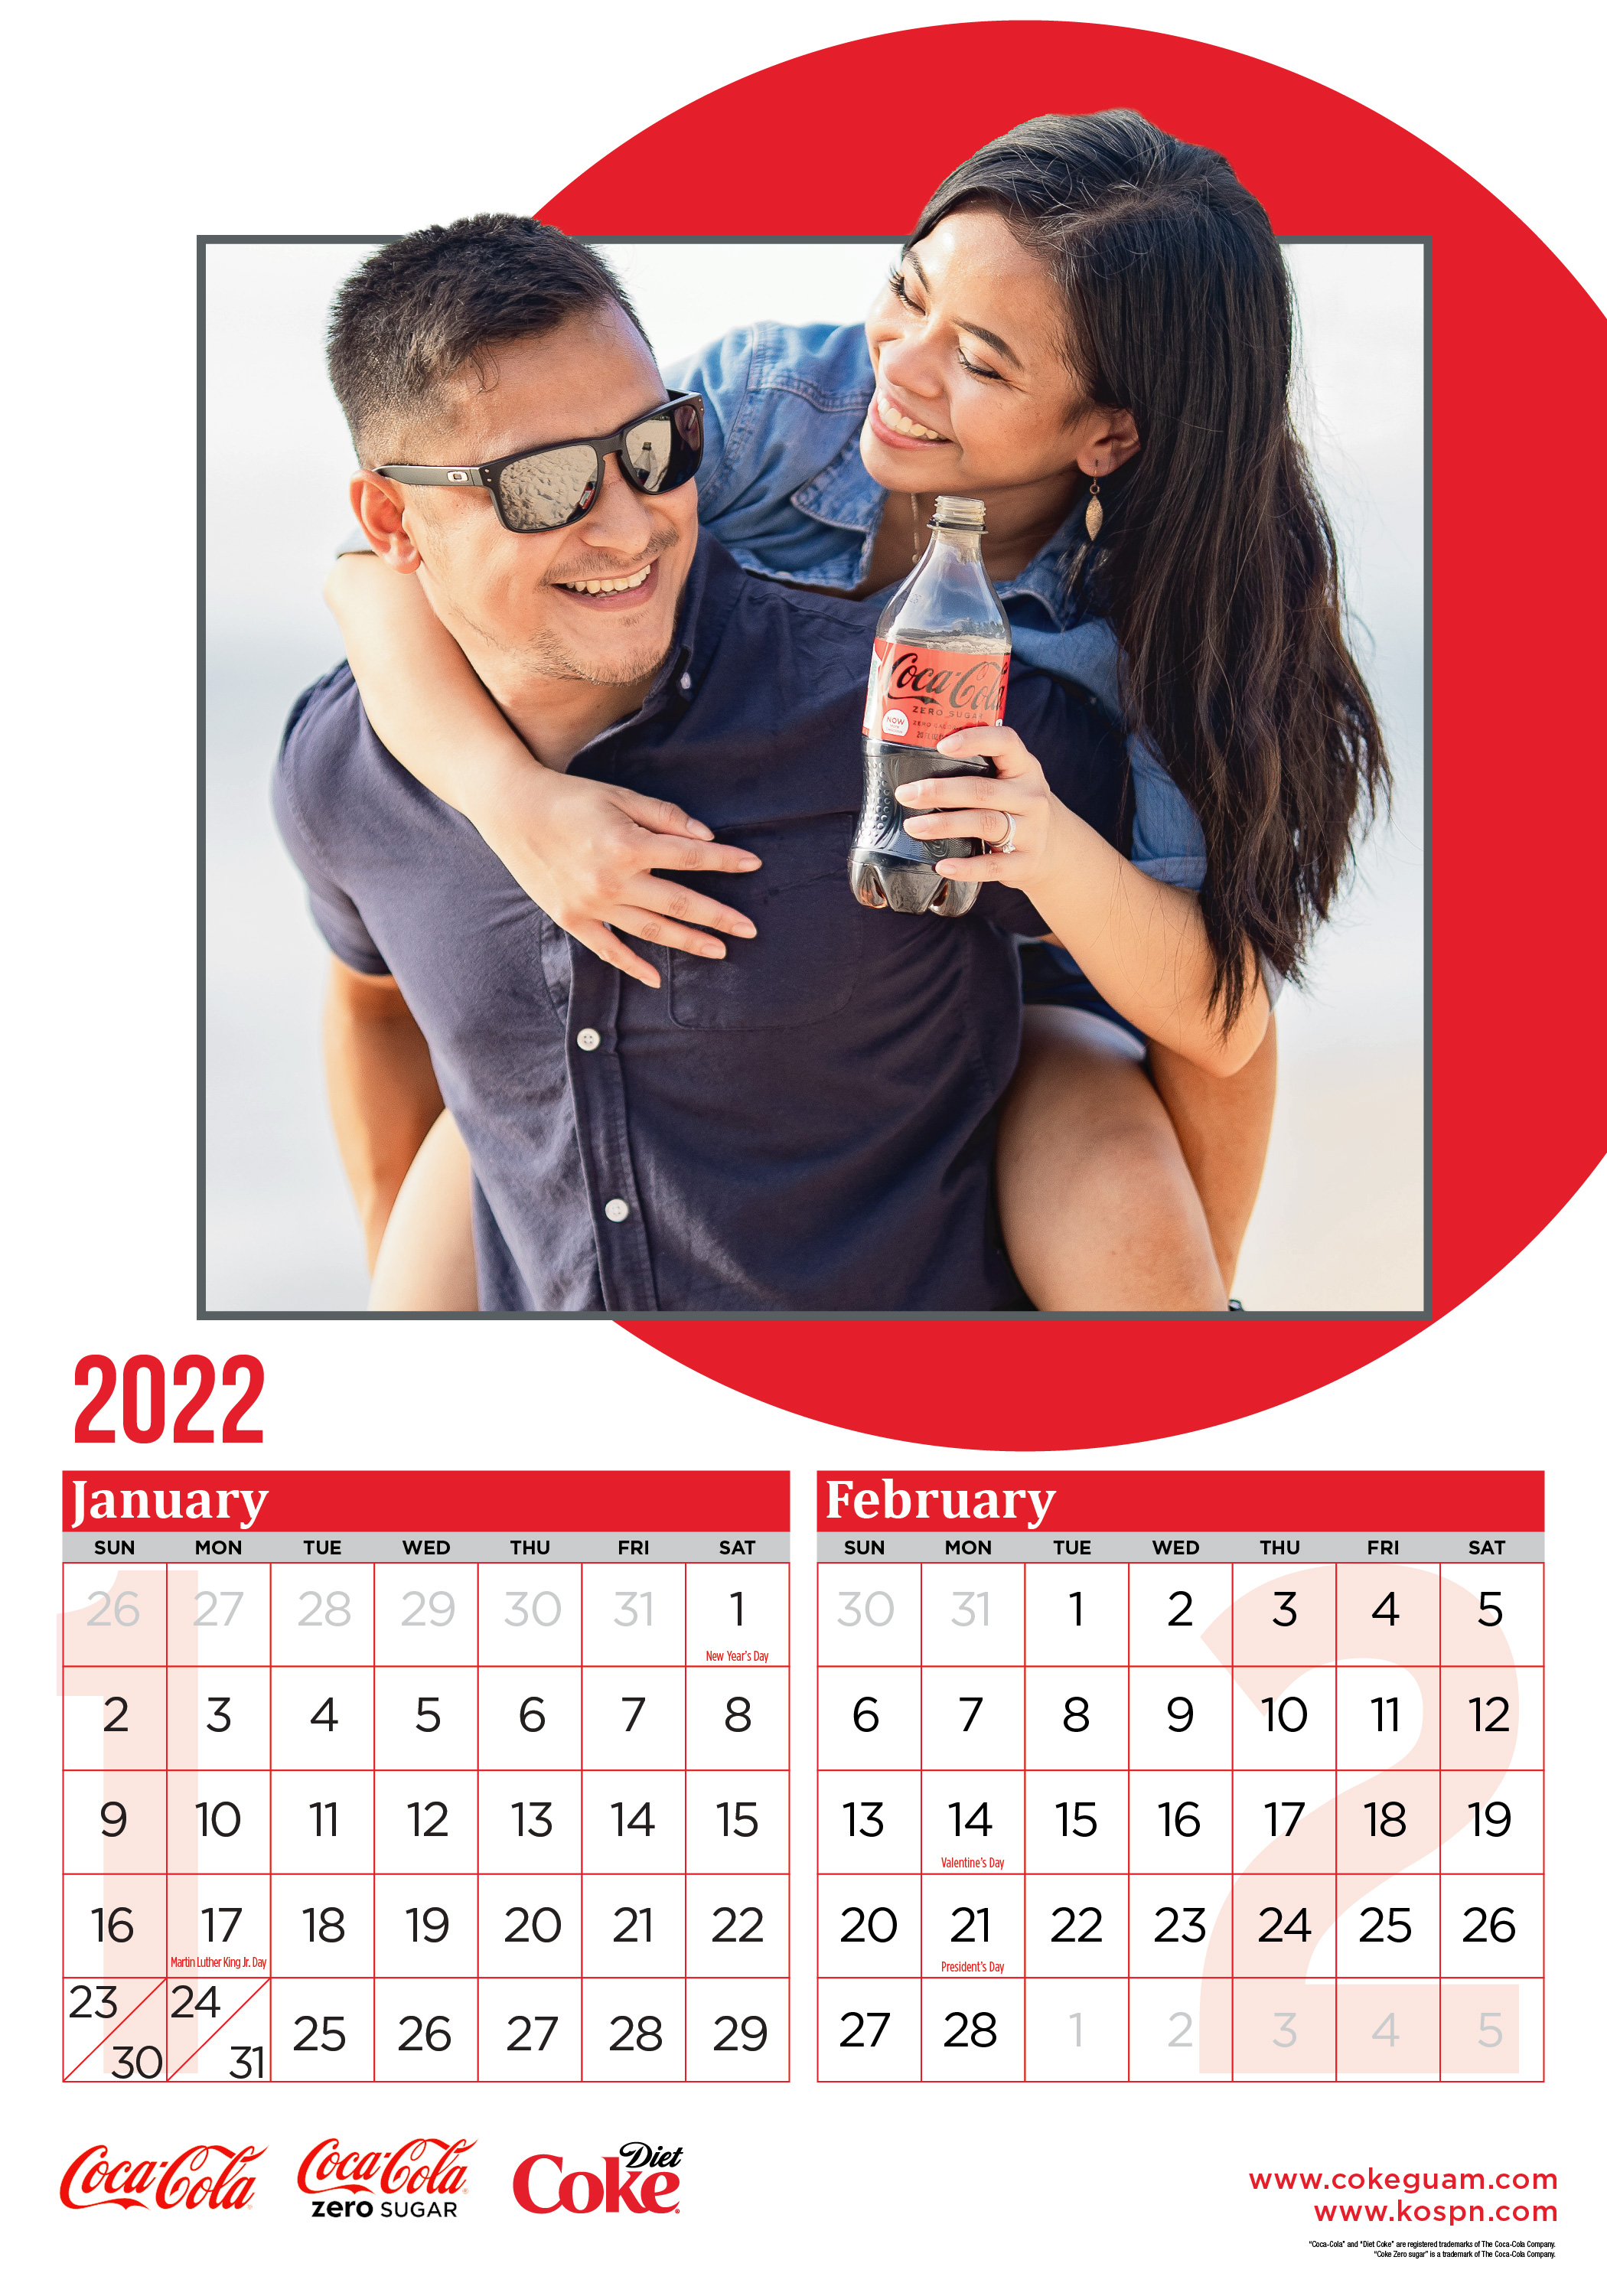 2022 Coca-Cola Calendar January-February